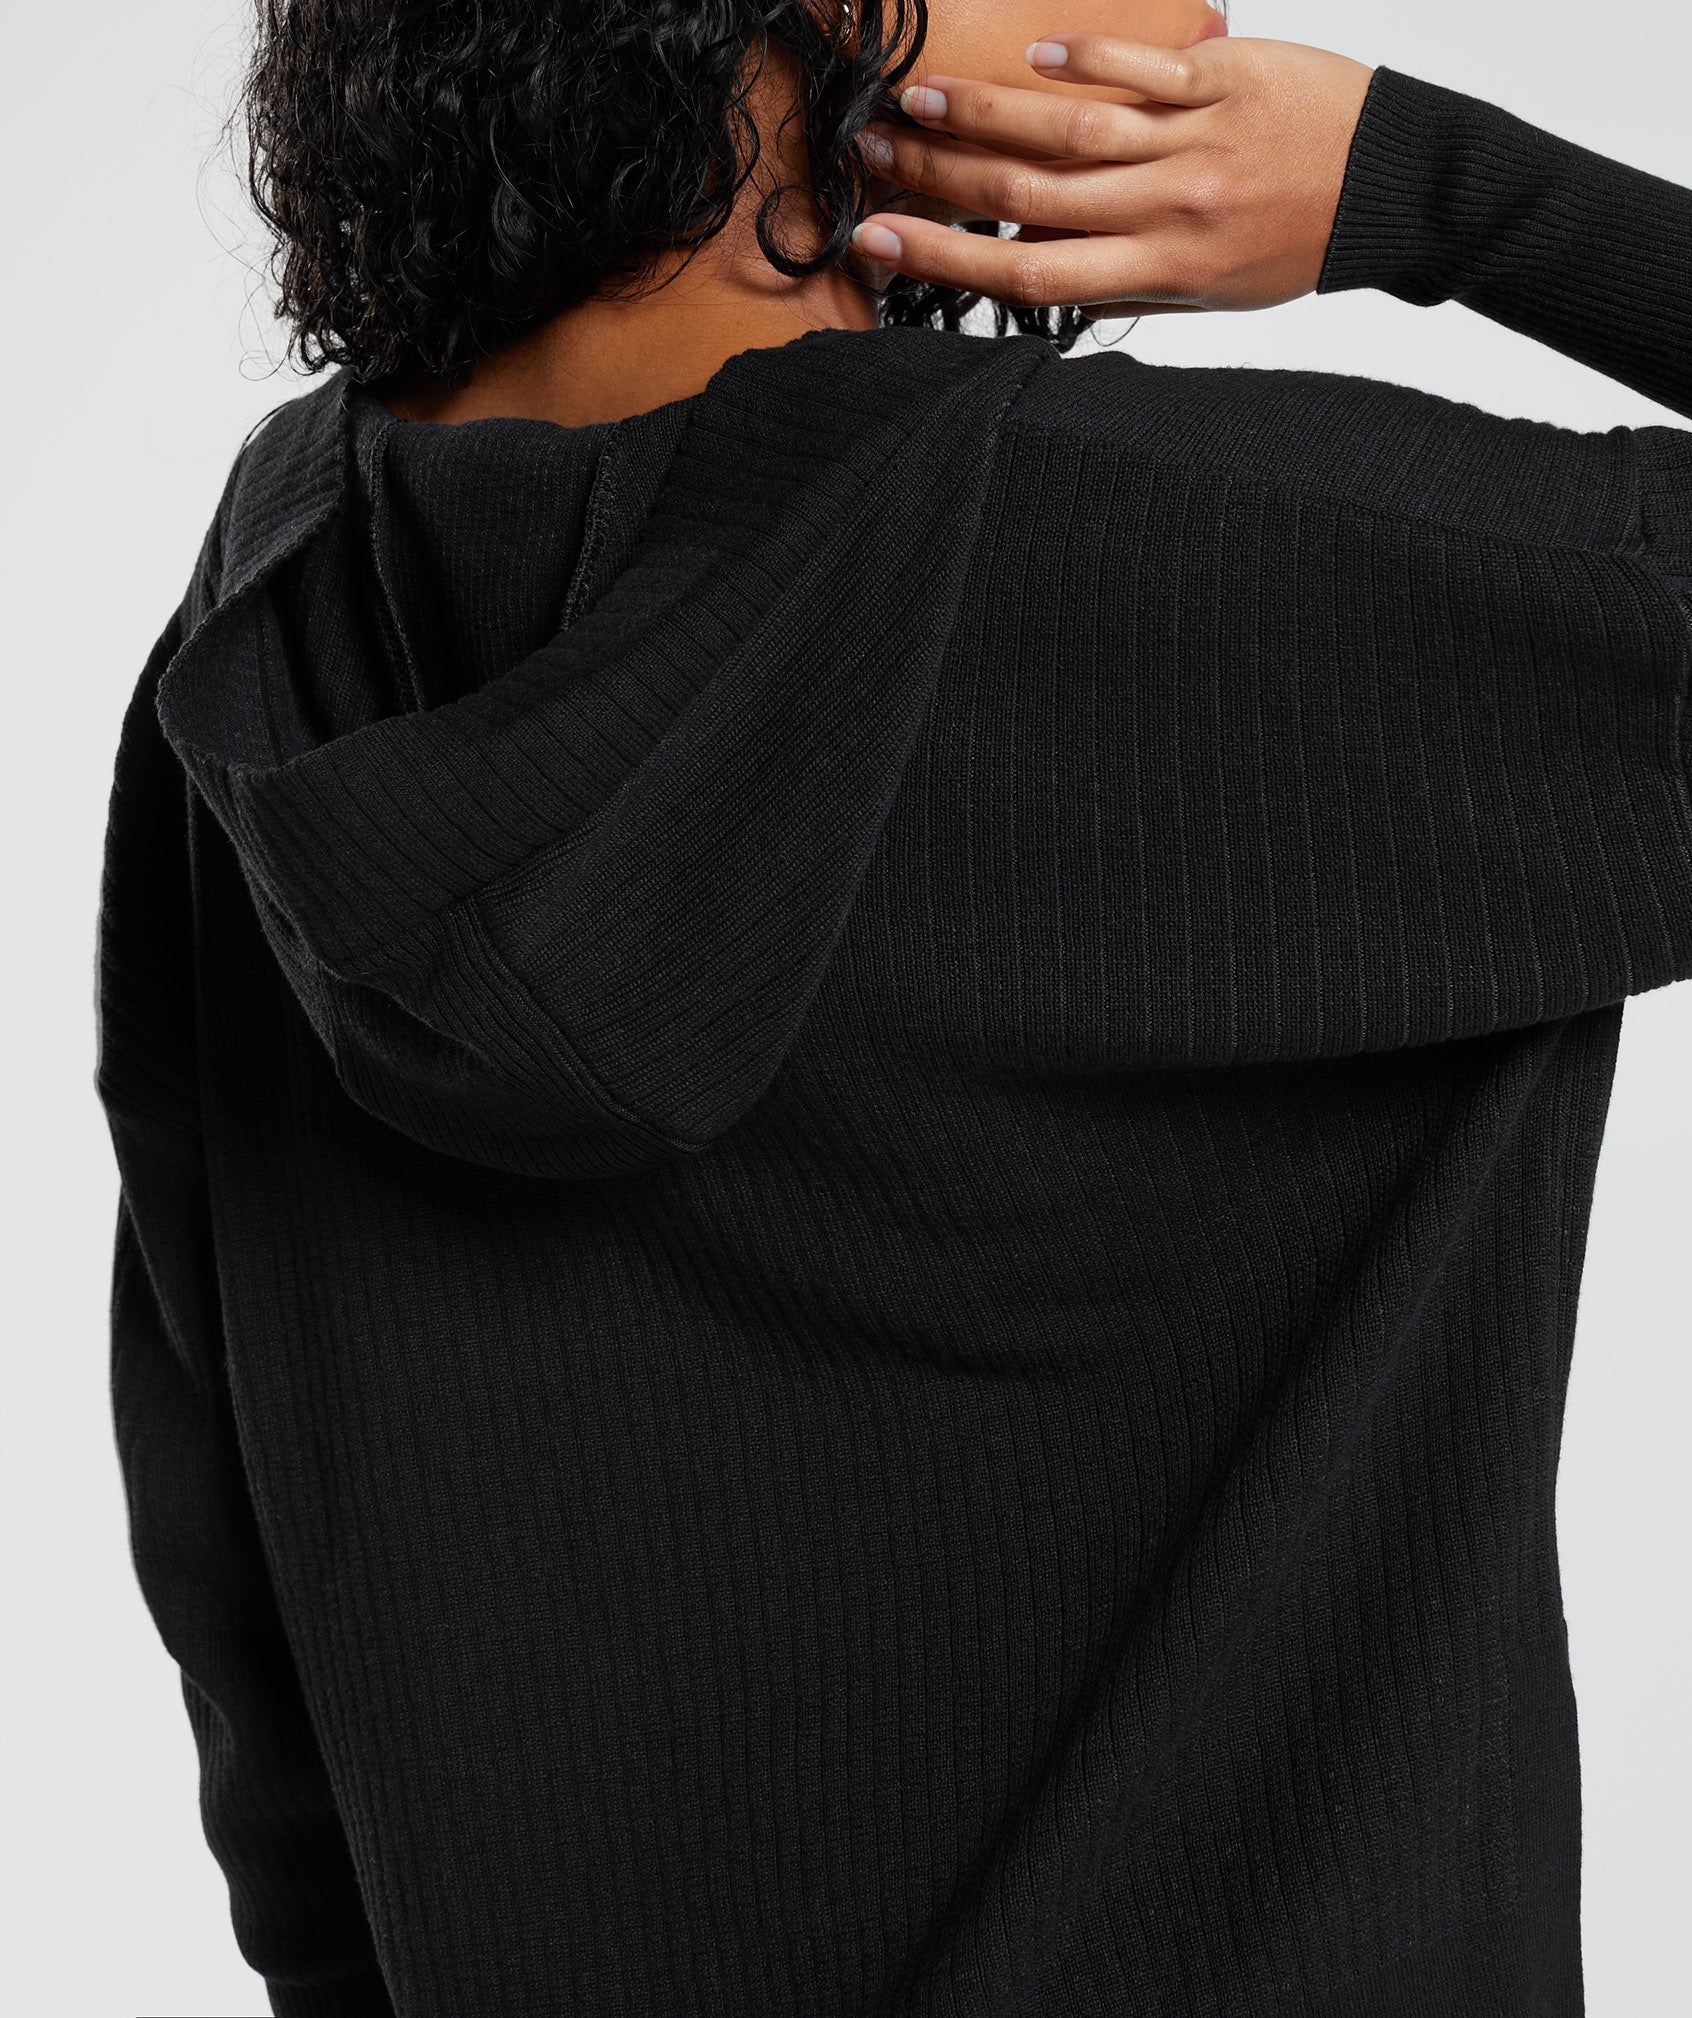 Pause Knitwear Hoodie in Black/Onyx Grey